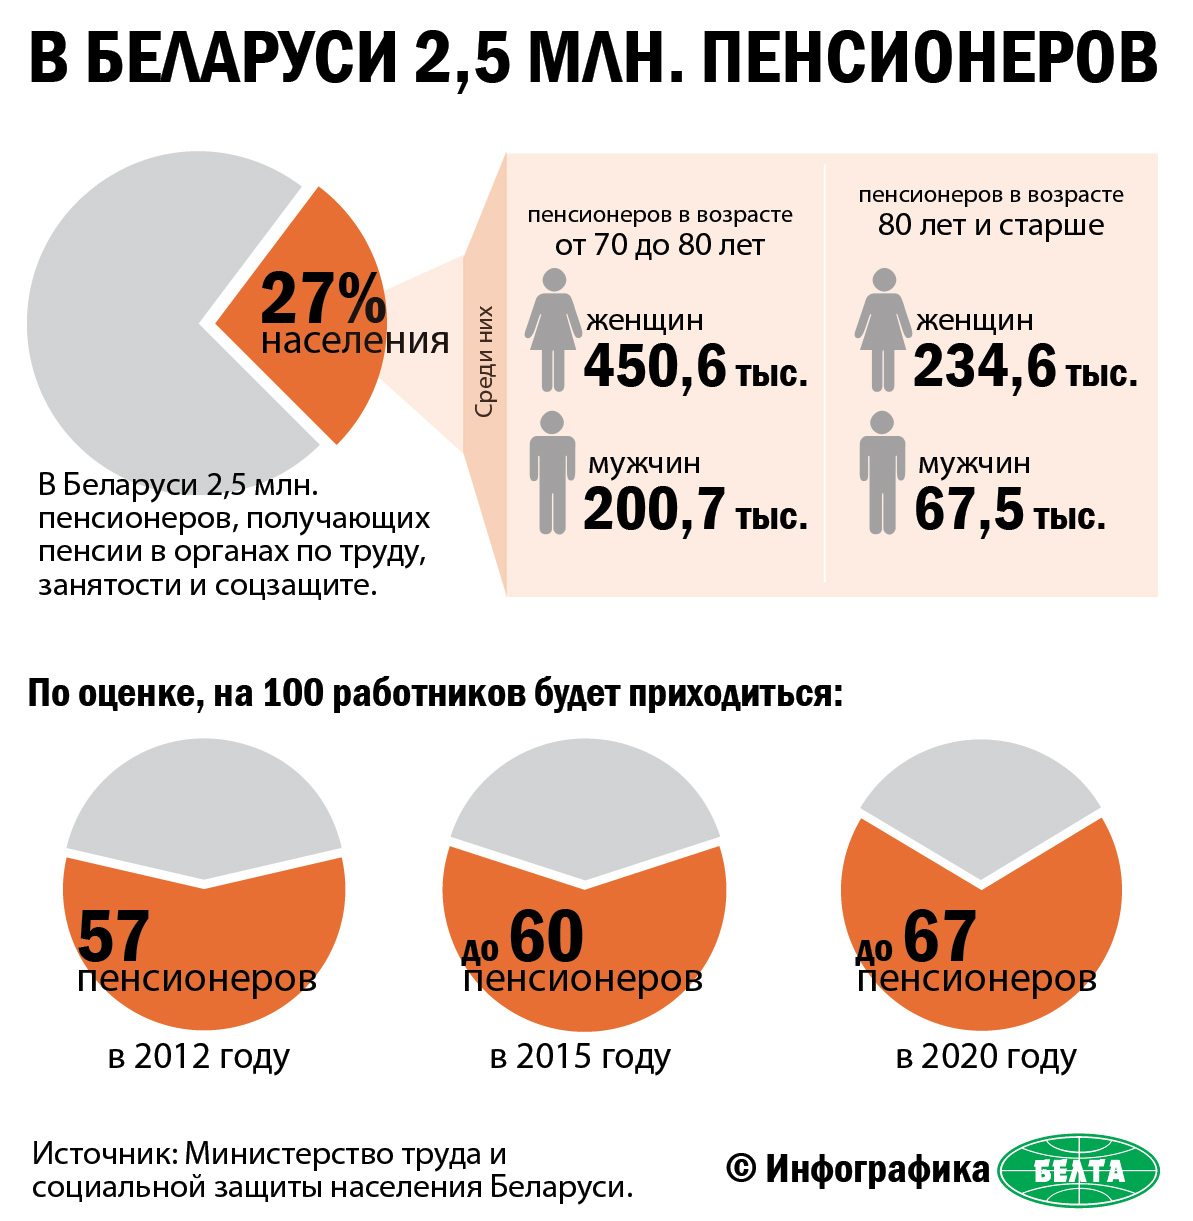 Сколько рб придет. Население Беларуси. Беларусь численность населения. Соотношение работающих и пенсионеров. Пенсионеры инфографика.